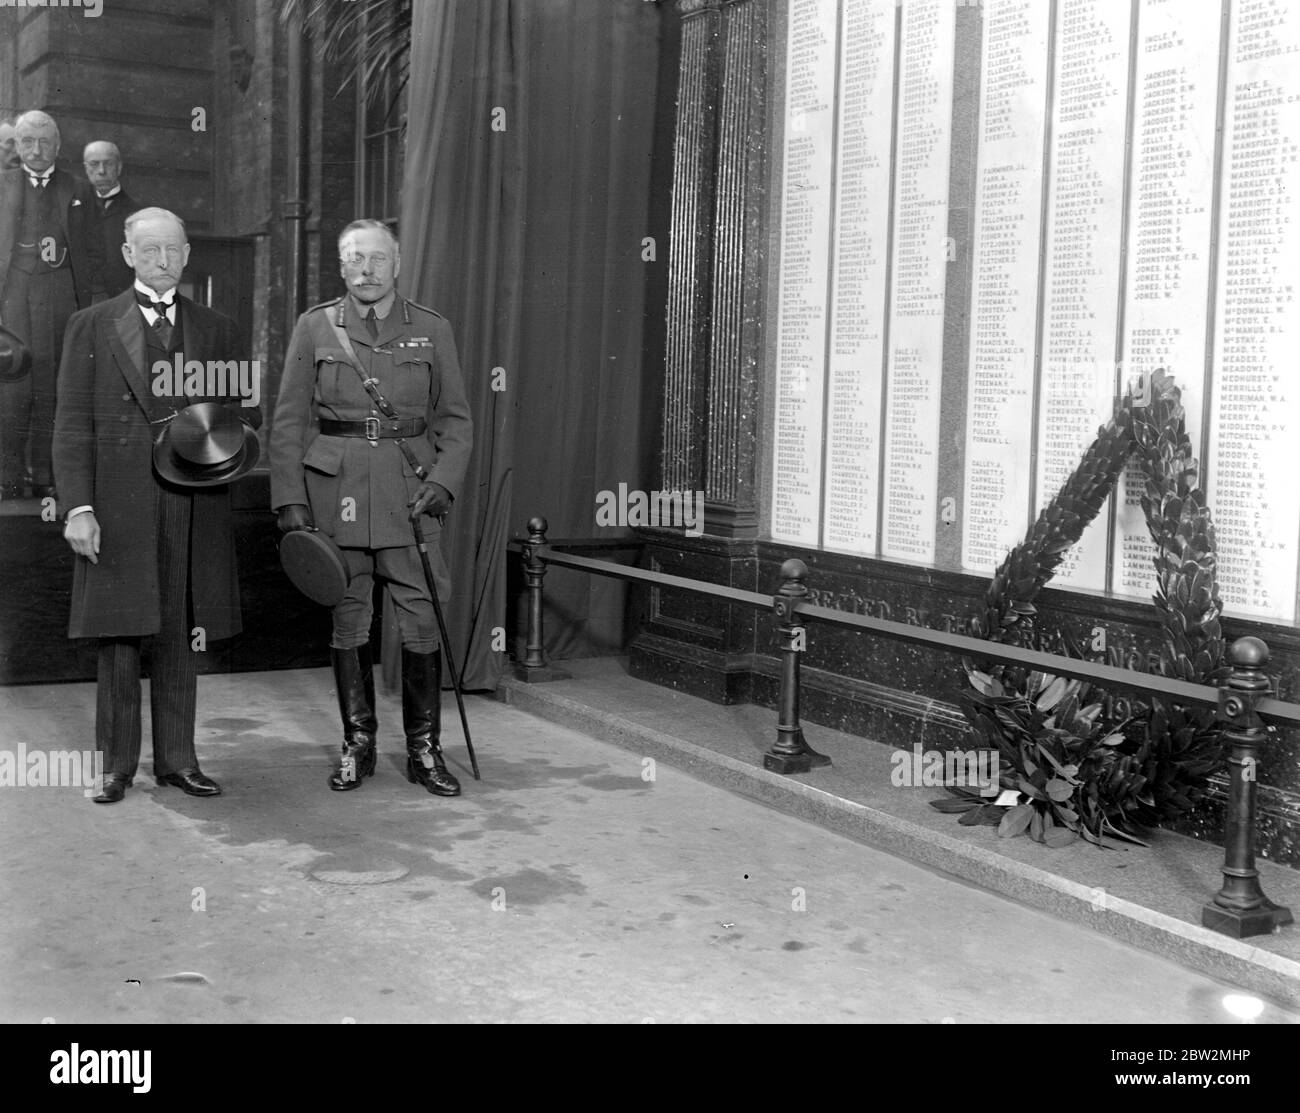 Lord Haig svela il Memoriale di G.B.R. Uomini a King's Cross con Sir Fredrick Banbury. Haig, Douglas (i conte Haig) generale e maresciallo britannico; ha guidato gli eserciti britannici in Francia nella prima guerra mondiale 1915-1918  1861-1928 Foto Stock